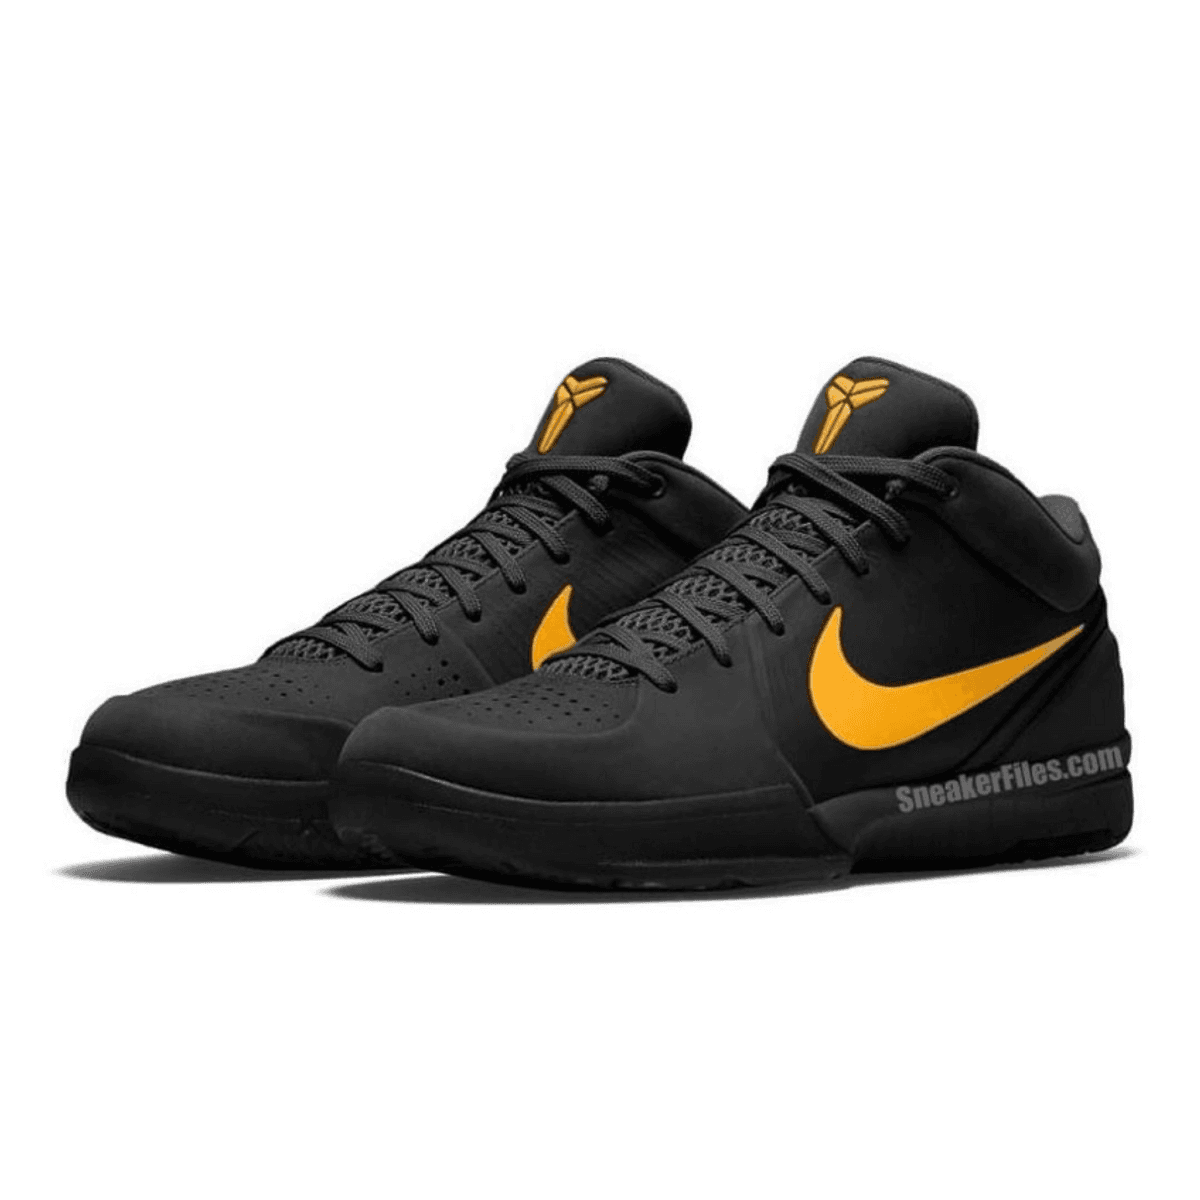 The Nike Kobe 4 Protro Returns 2023 In Black and Gold